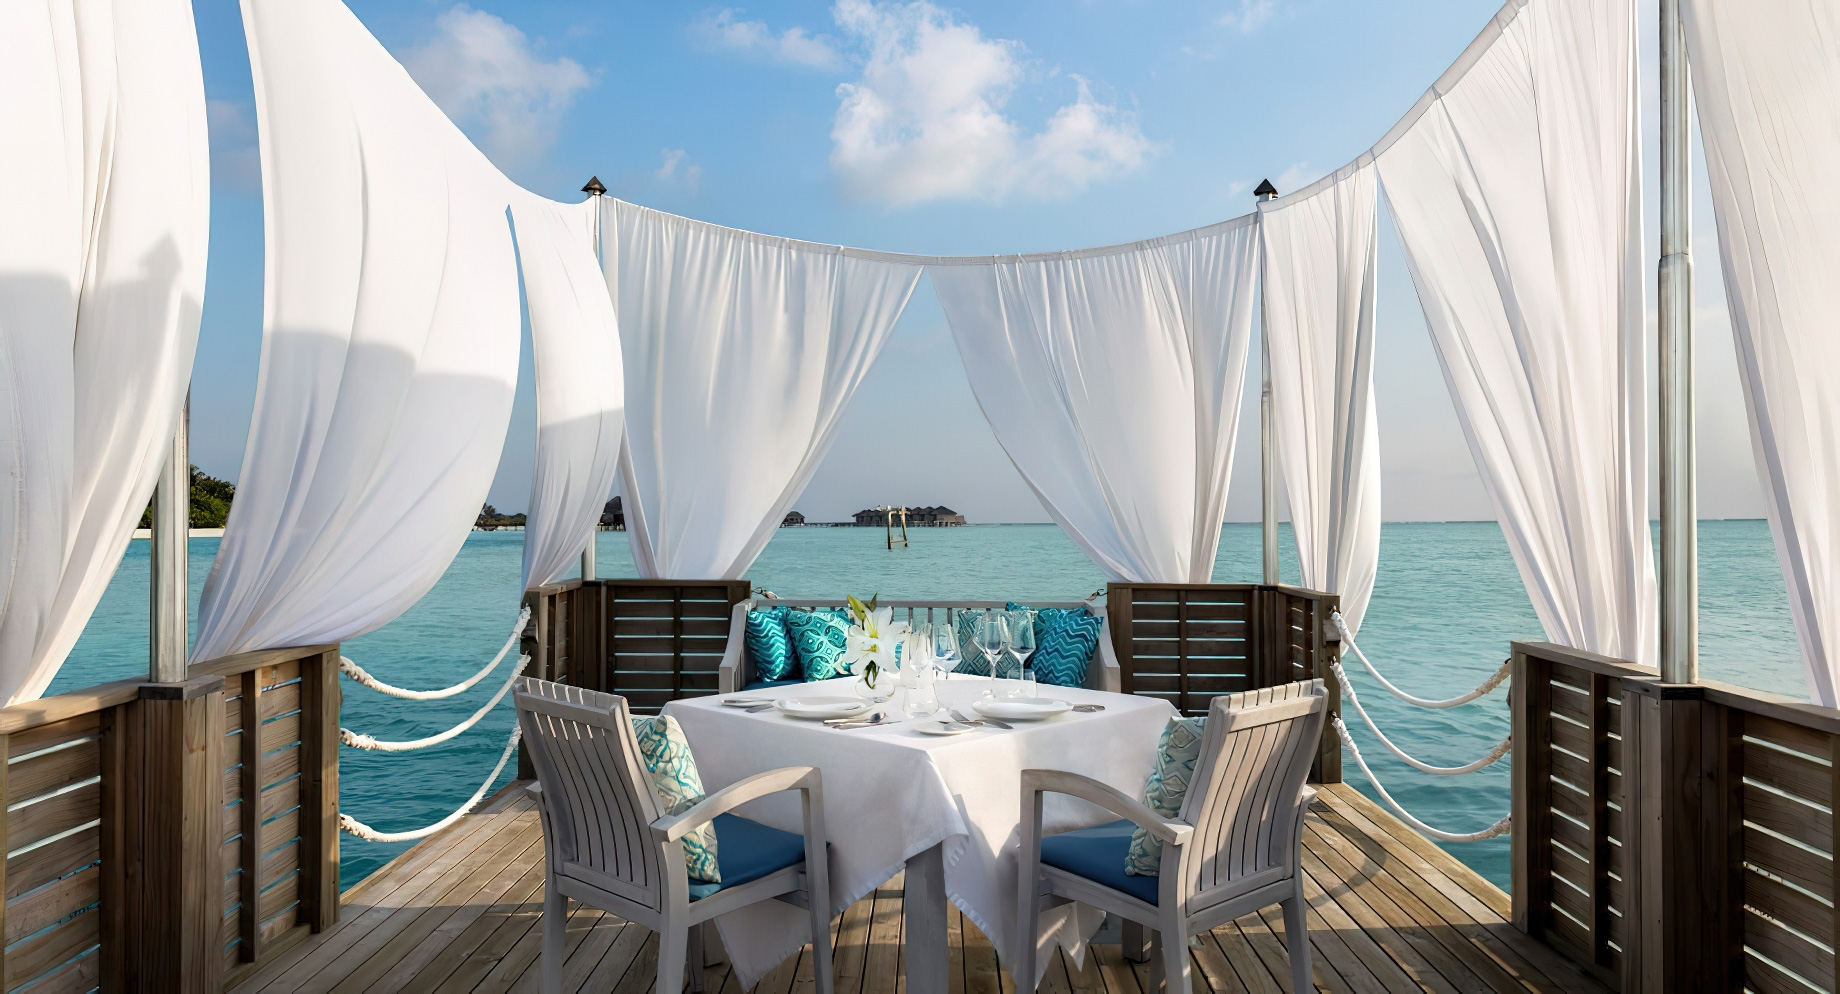 Anantara Thigu Maldives Resort – South Male Atoll, Maldives – Floating Ocean View Dining